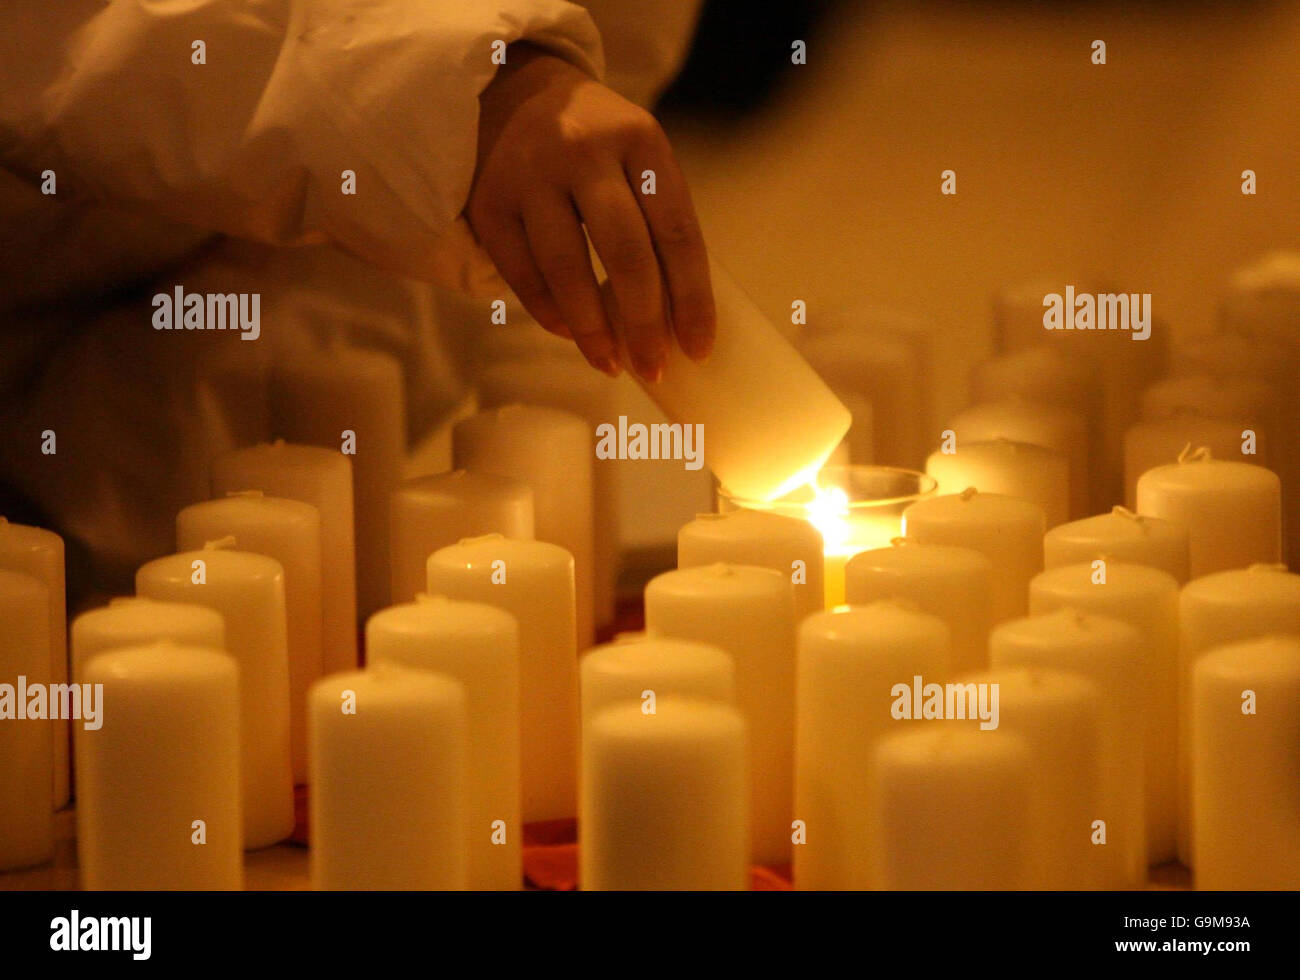 Parenti di coloro che sono morti per morte cardiaca improvvisa candele di luce durante un servizio commemorativo alla chiesa parrocchiale di Monkstown di Irlanda a Dublino, per le vittime della condizione cardiaca fatale. Foto Stock